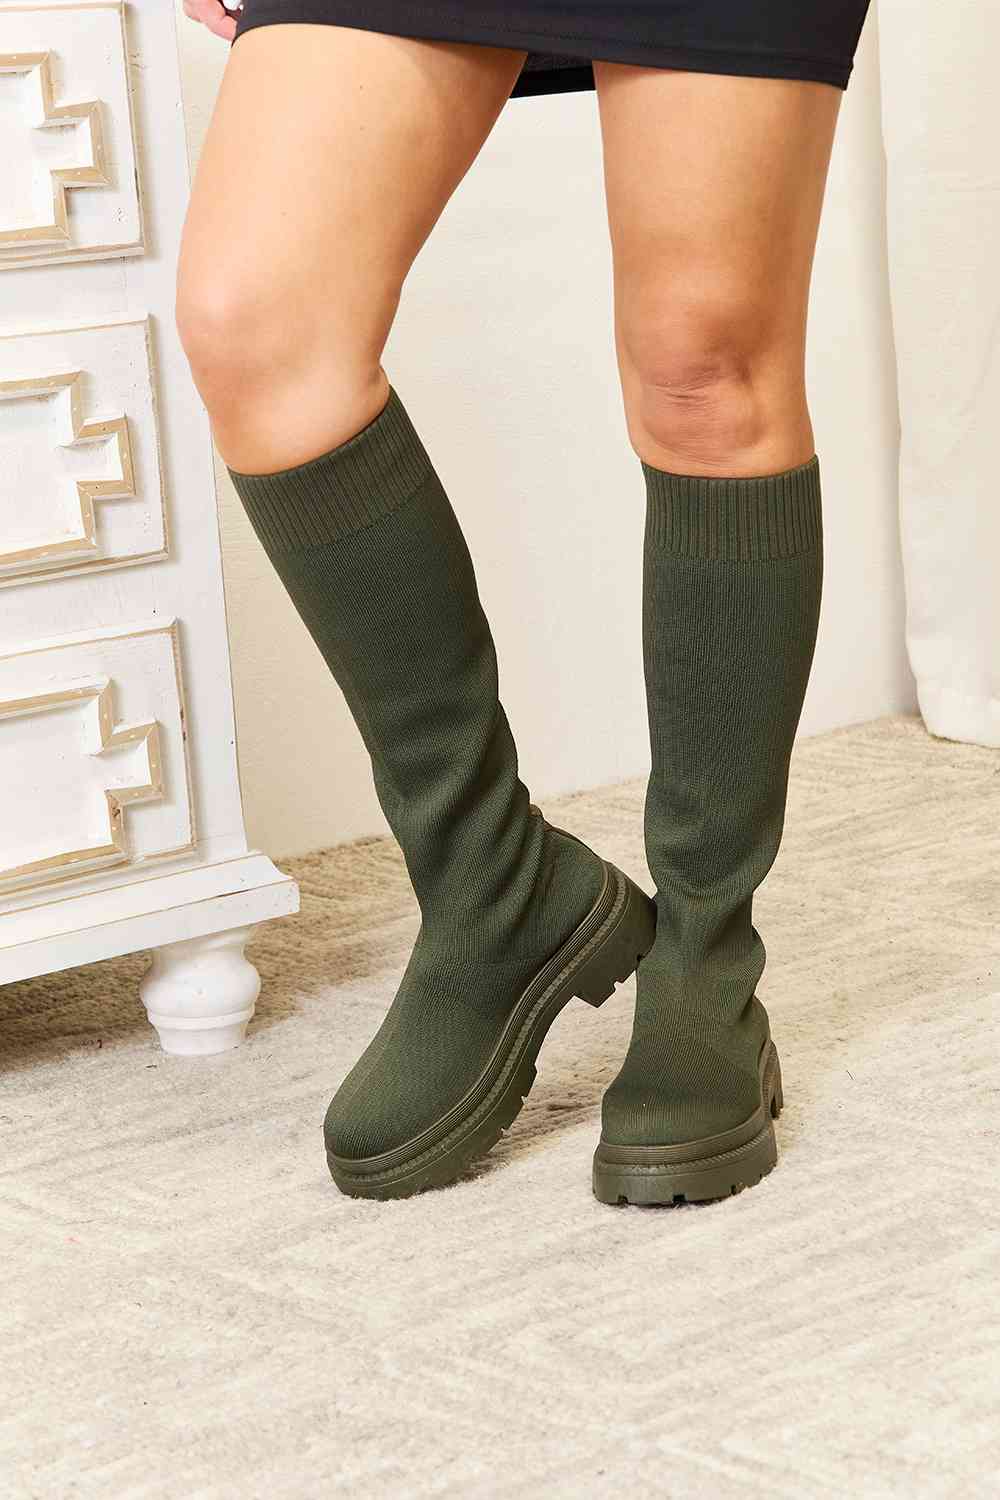 WILD DIVA Olive Green Knee High Platform Sock Boots